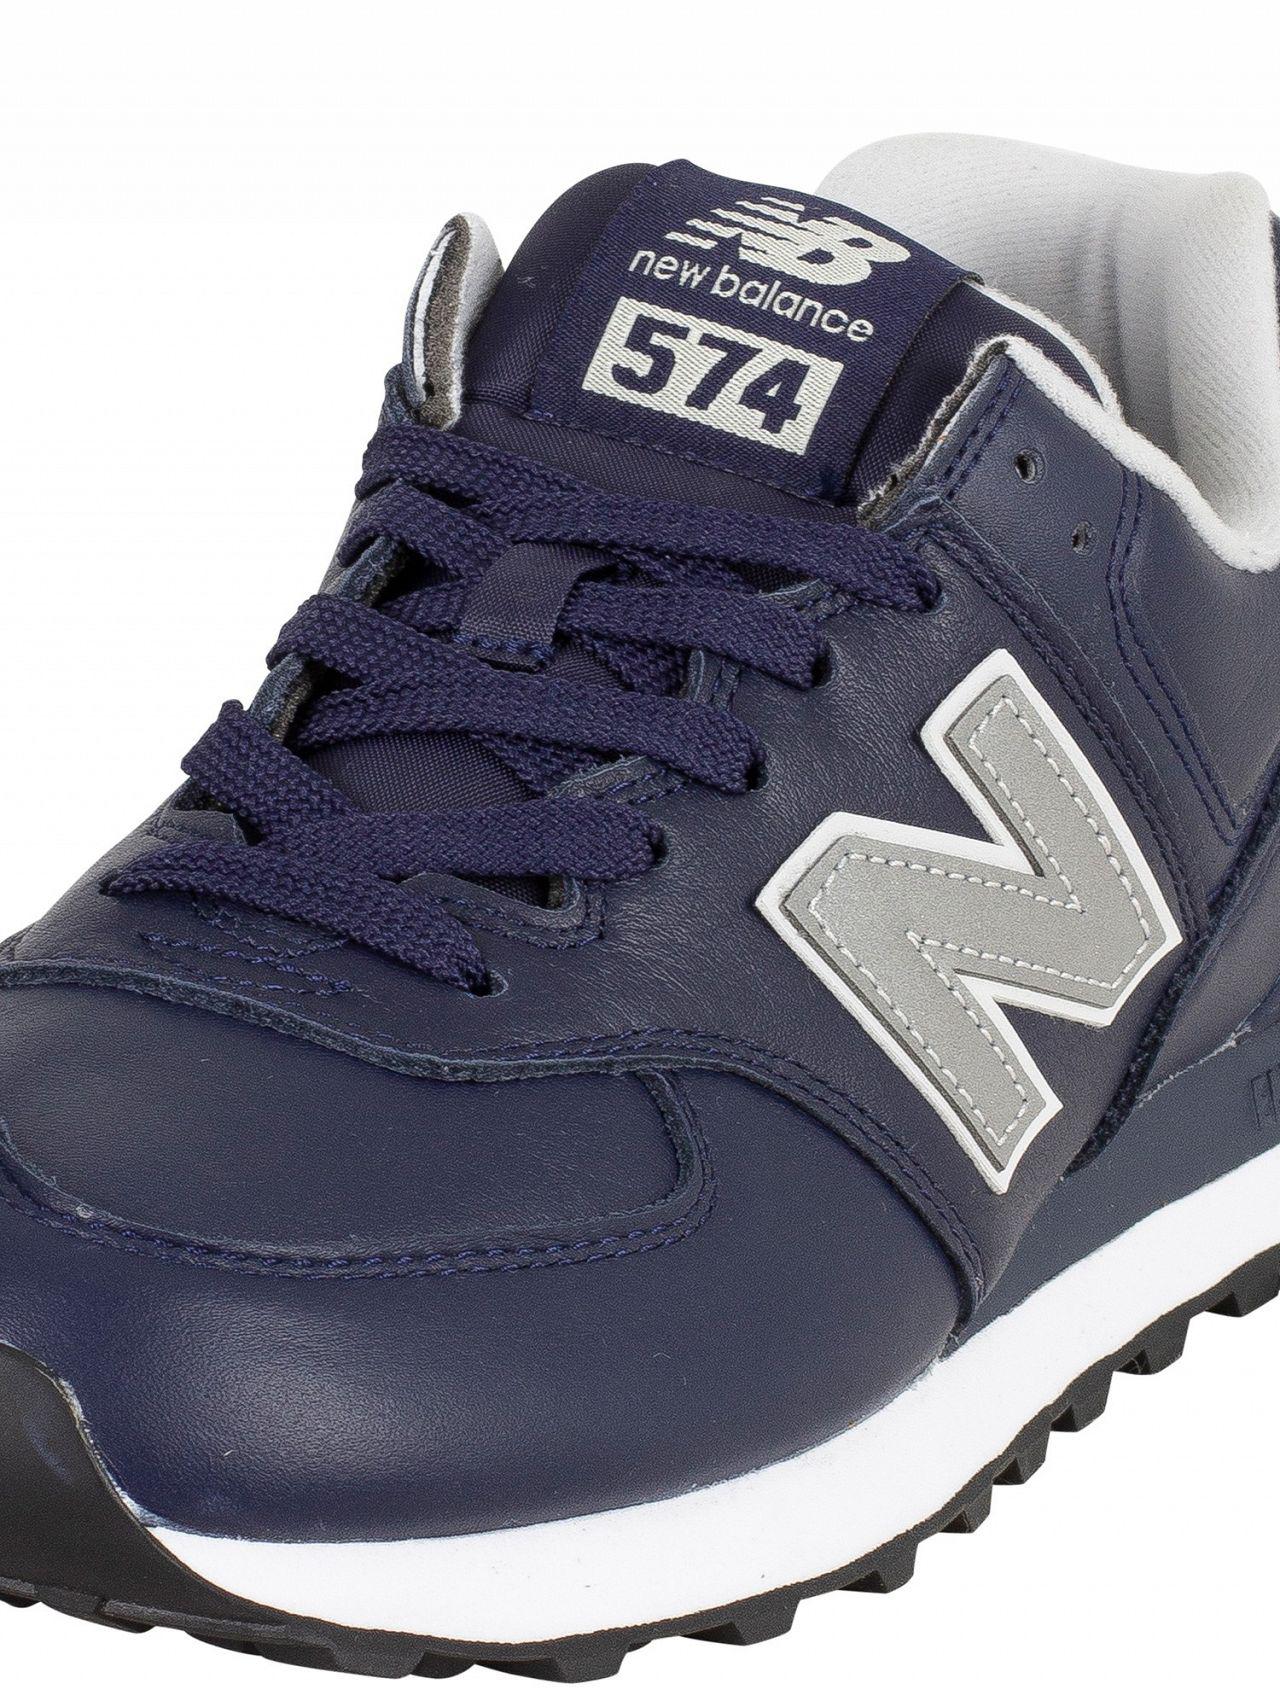 New Balance 574 Trainers Navygreybluerunningshoes